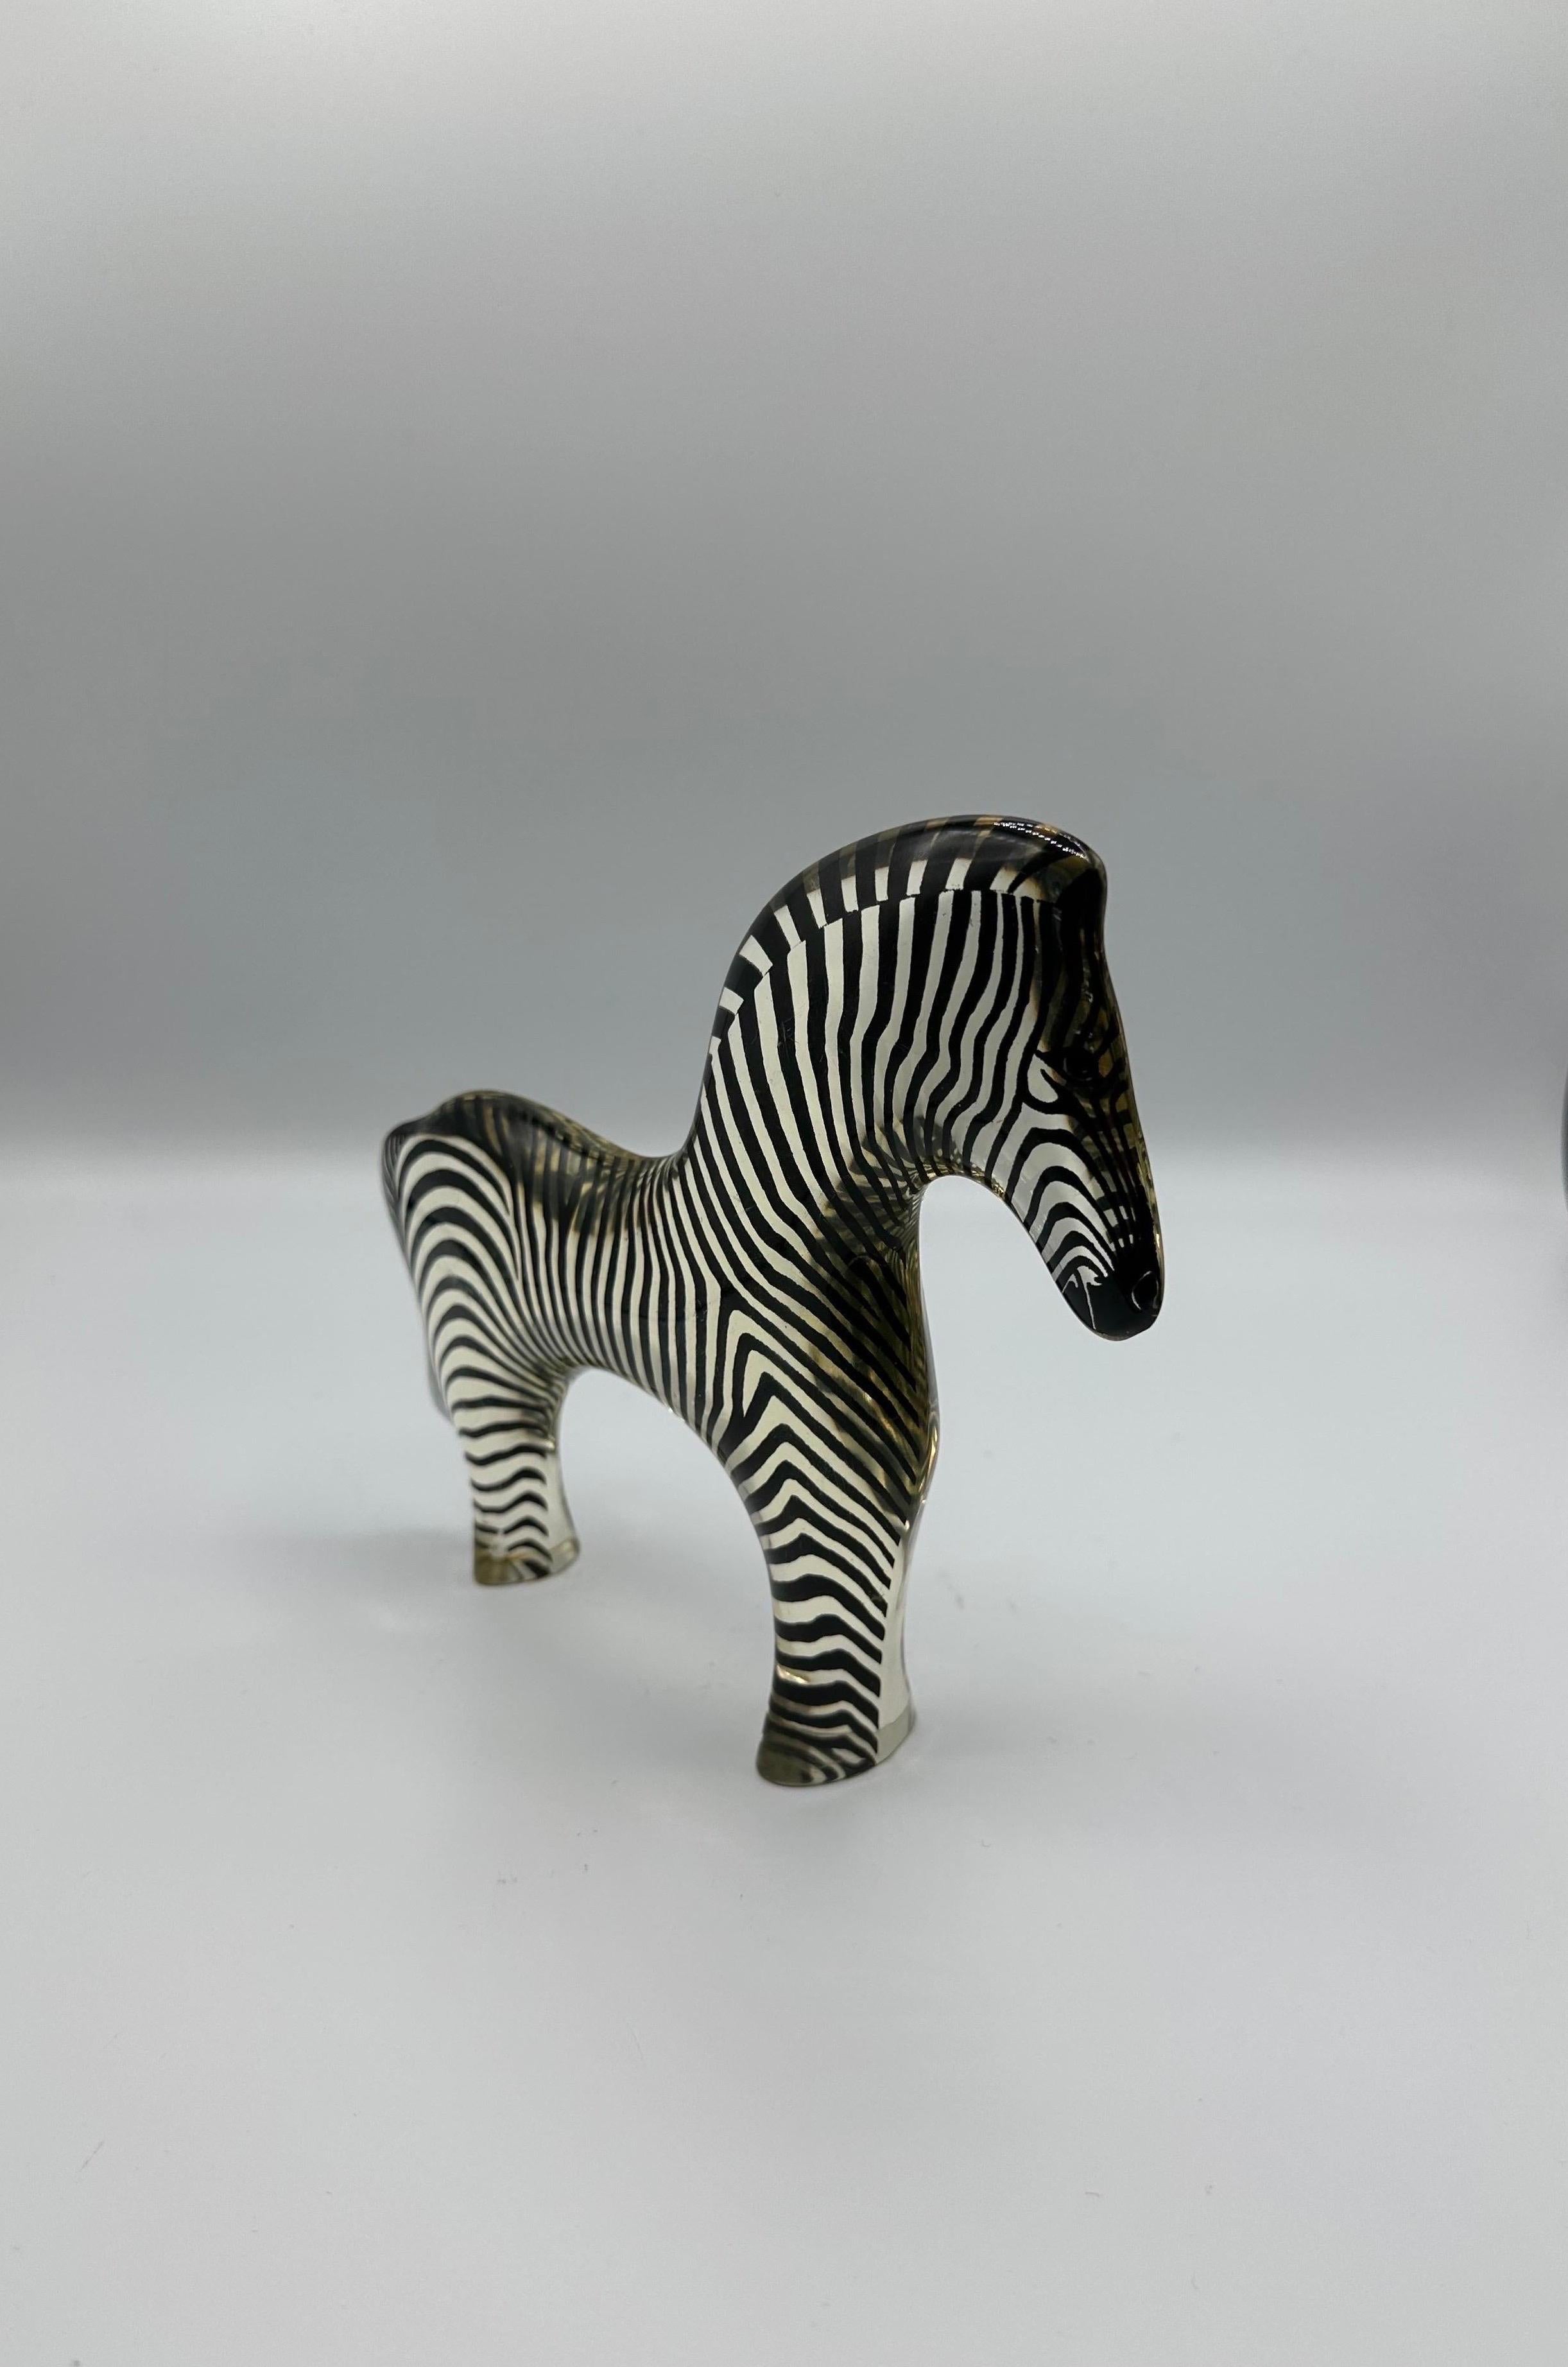 Brazilian Abraham Palatnik Zebra Lucite Acrylic Sculpture Figurine For Sale